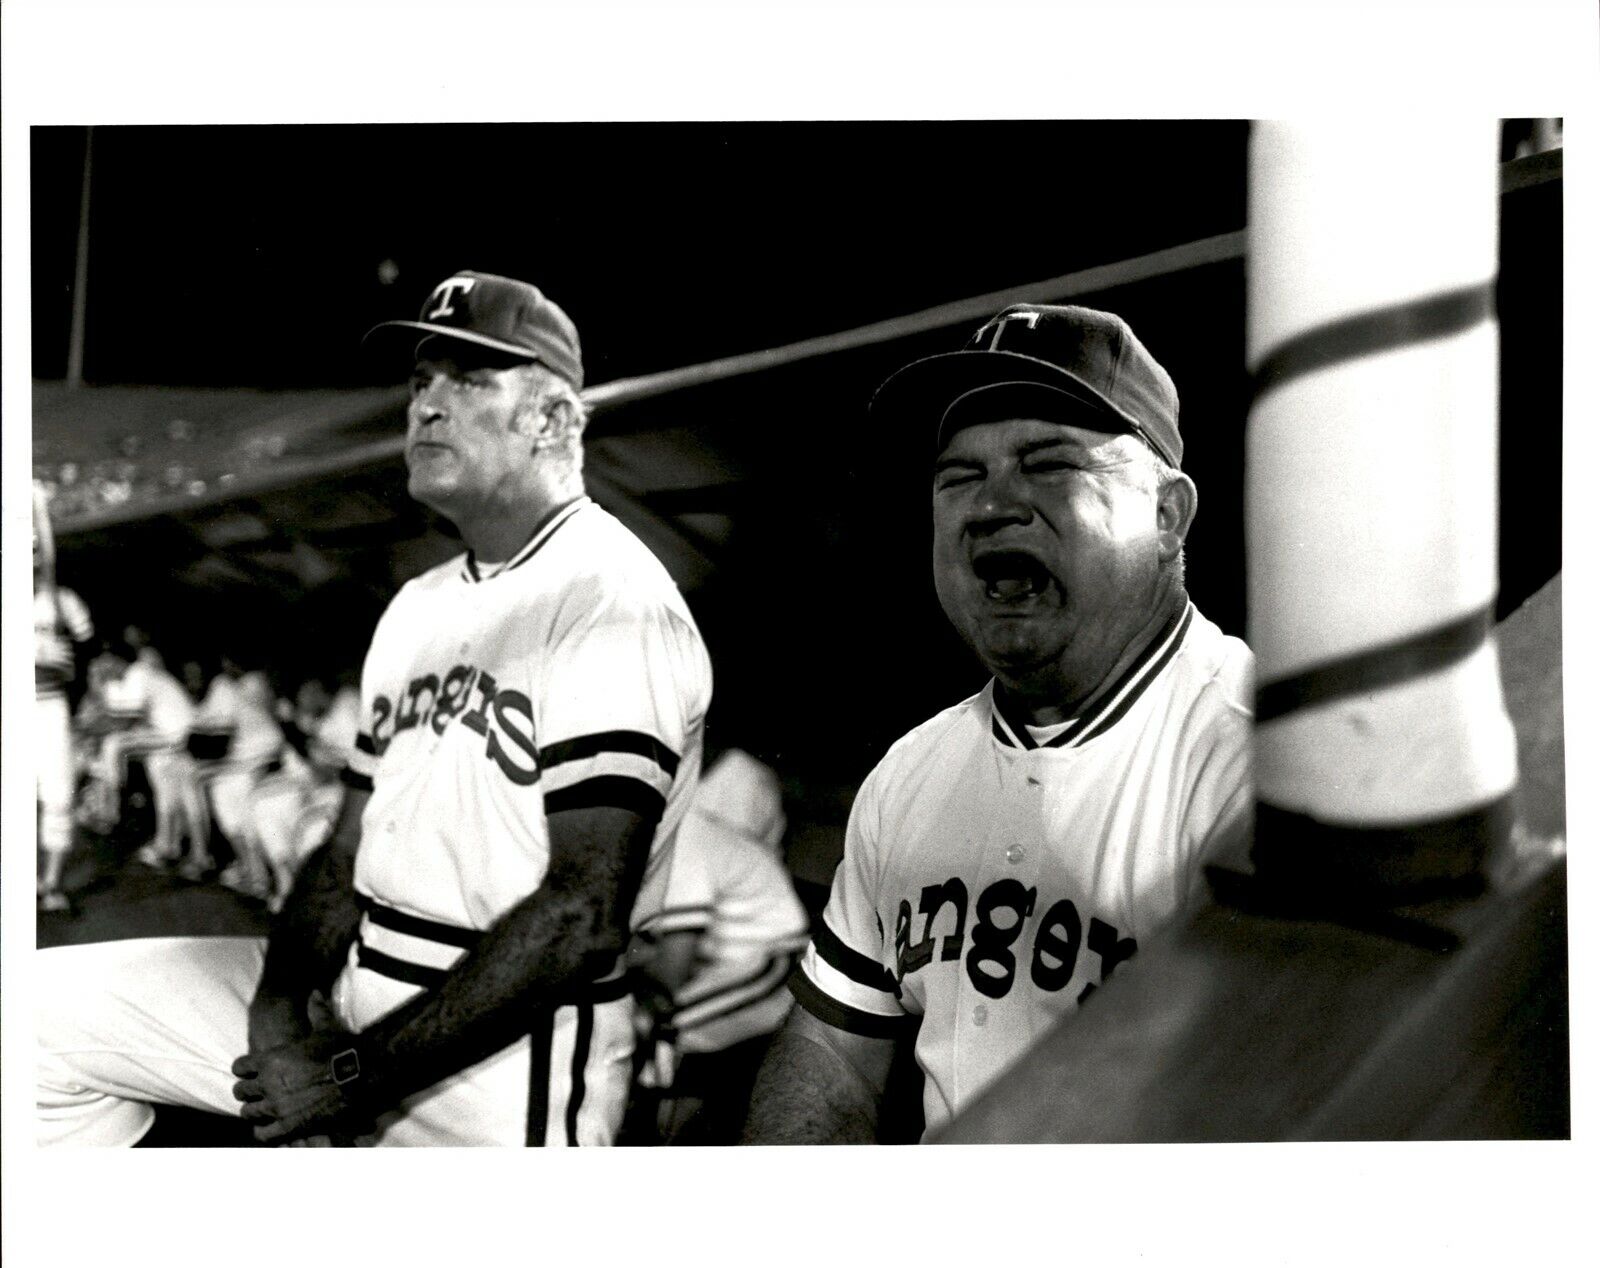 LG915 1981 Original Photo DON ZIMMER Texas Rangers Manager Team Dugout Baseball